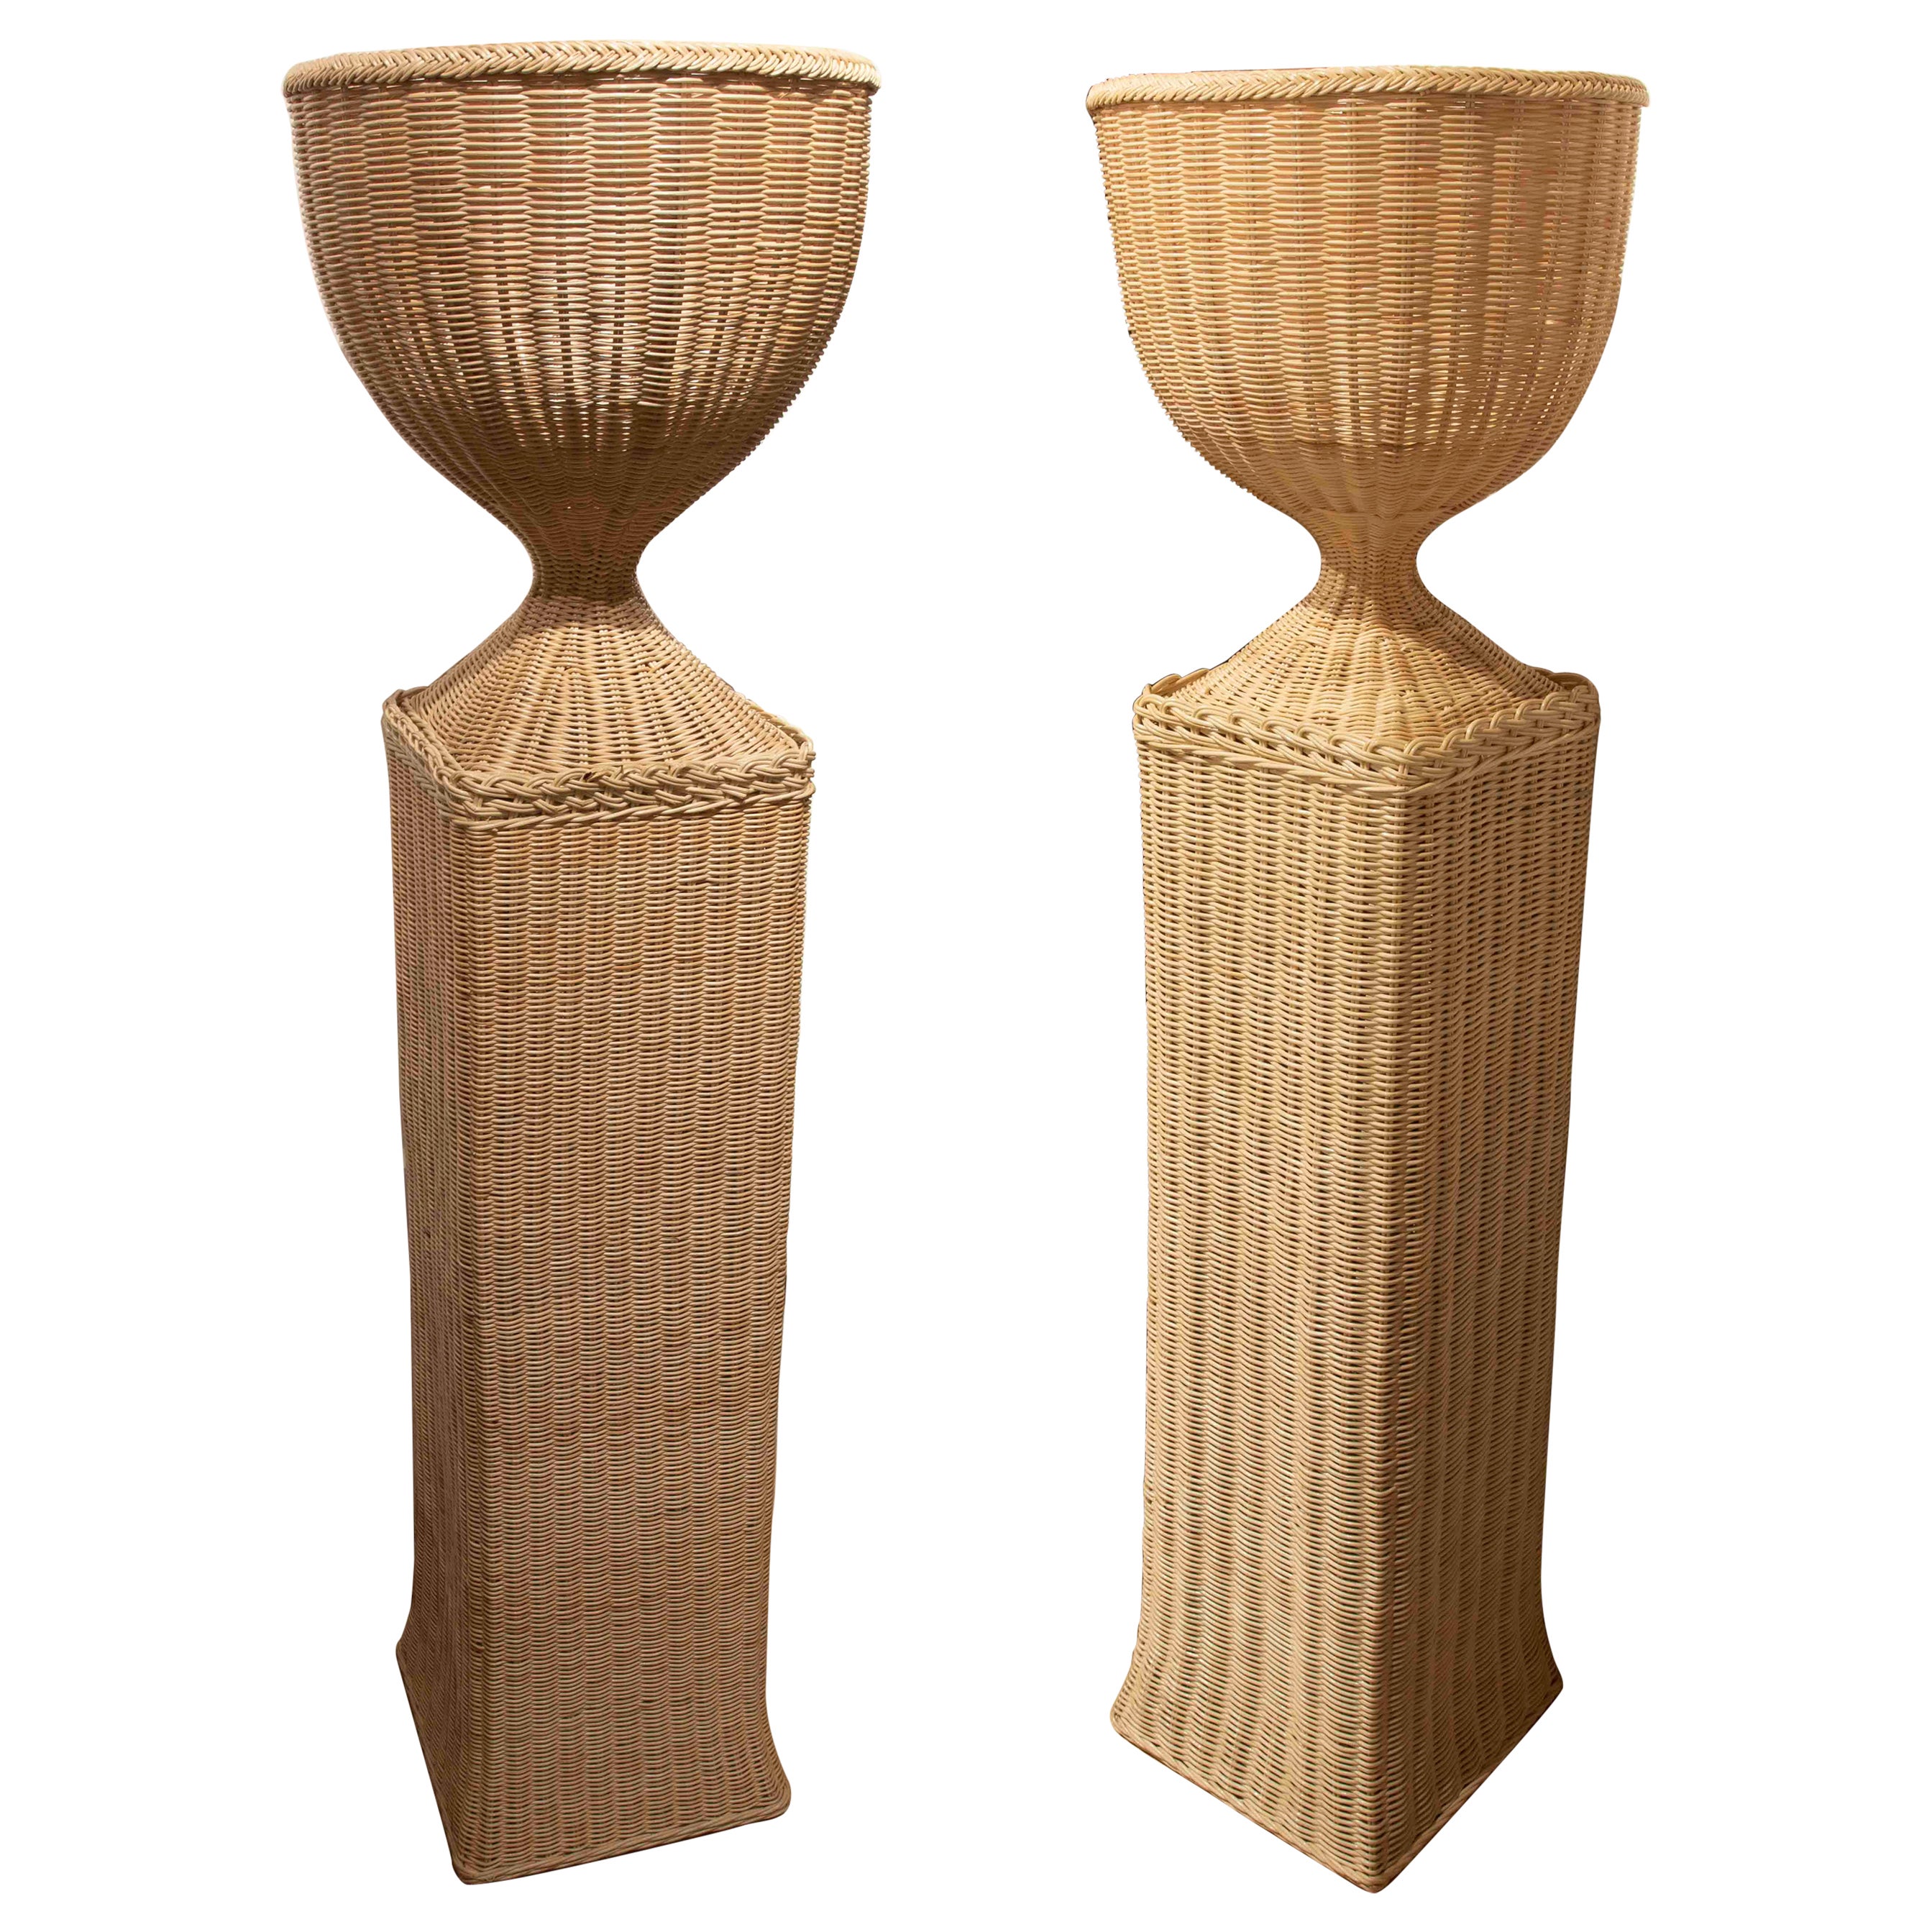 Paire de tasses en osier faites à la main avec bases rectangulaires et structure en bois